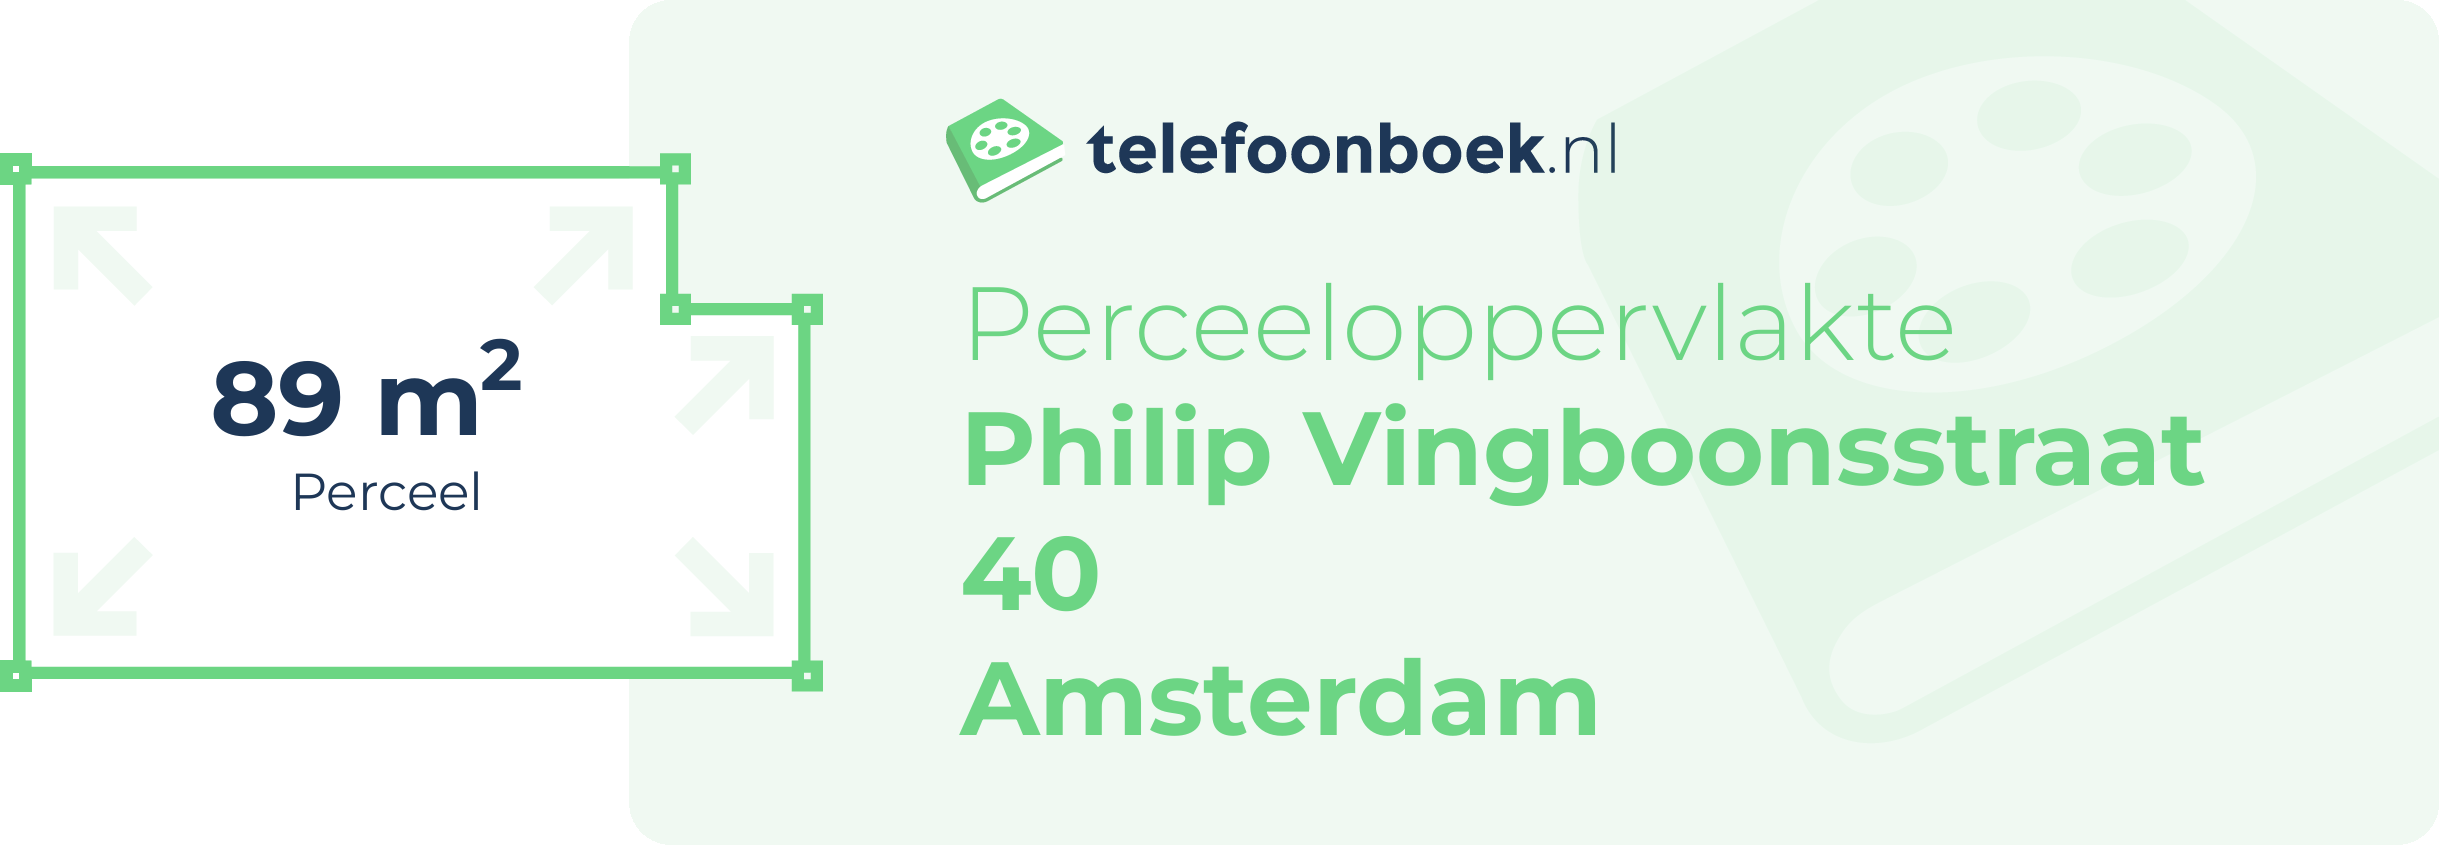 Perceeloppervlakte Philip Vingboonsstraat 40 Amsterdam